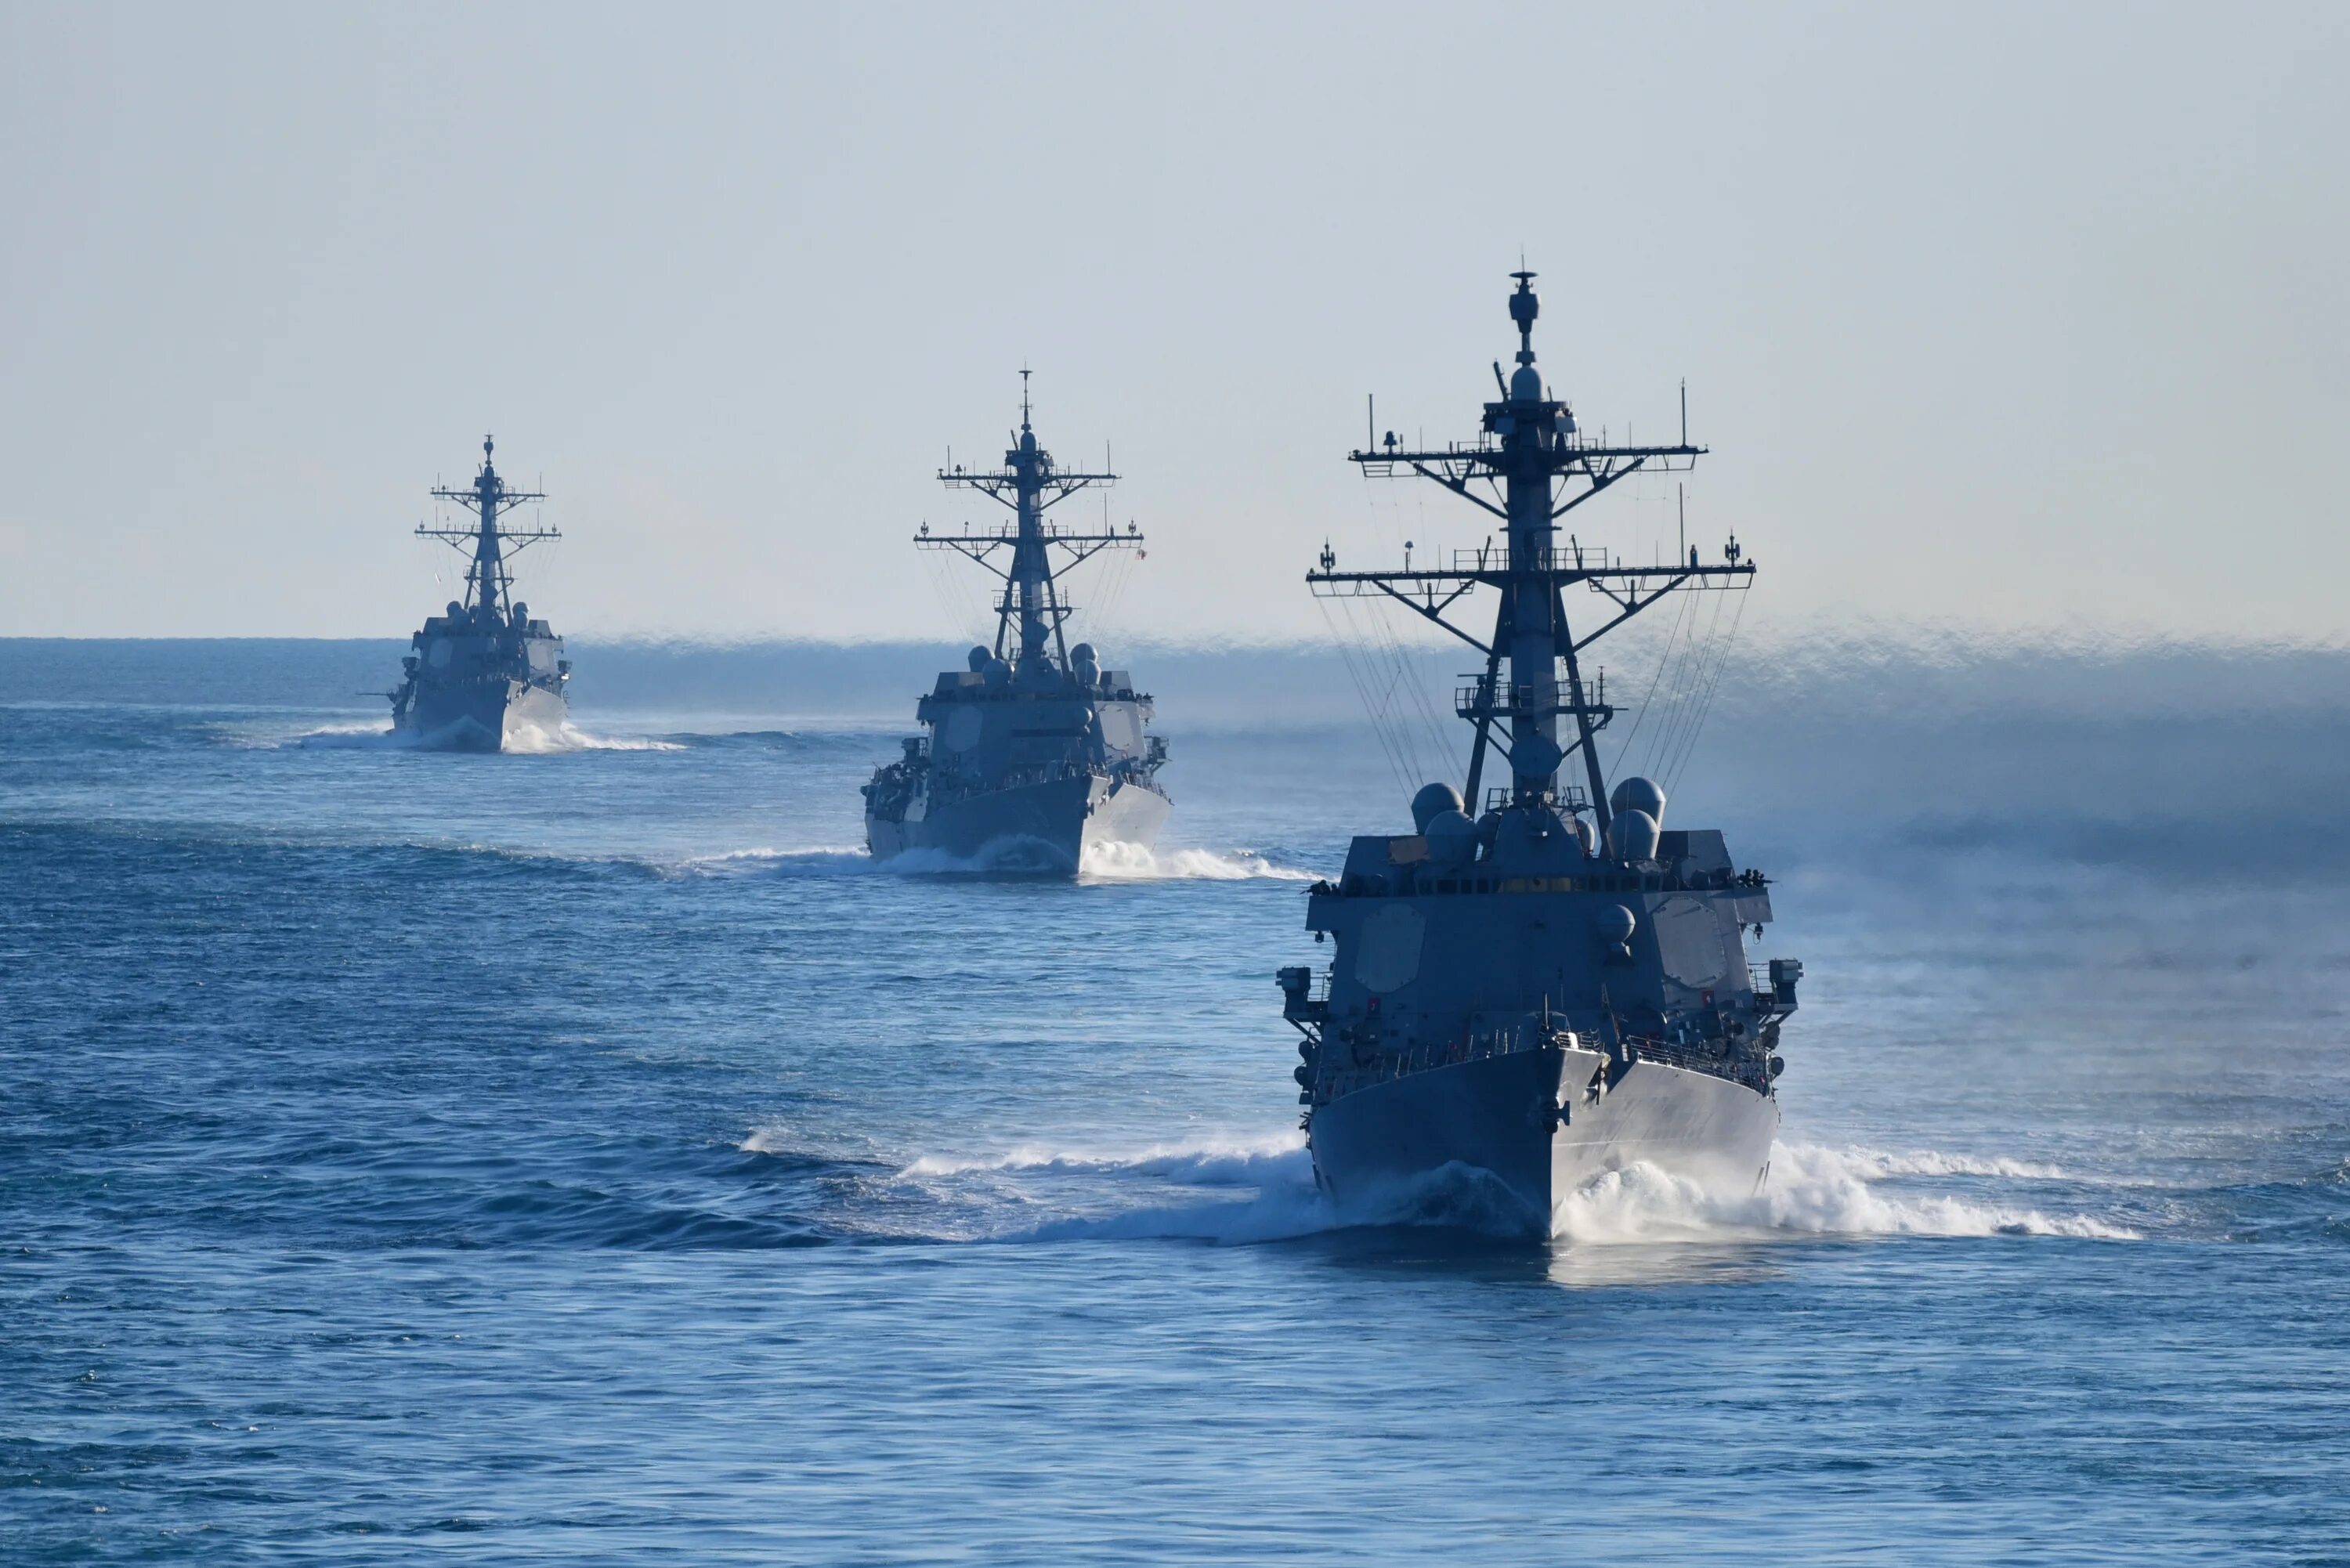 Usa ships. Военный корабль. Американские военные корабли. Военный корабль в море. Боевой корабль в море.